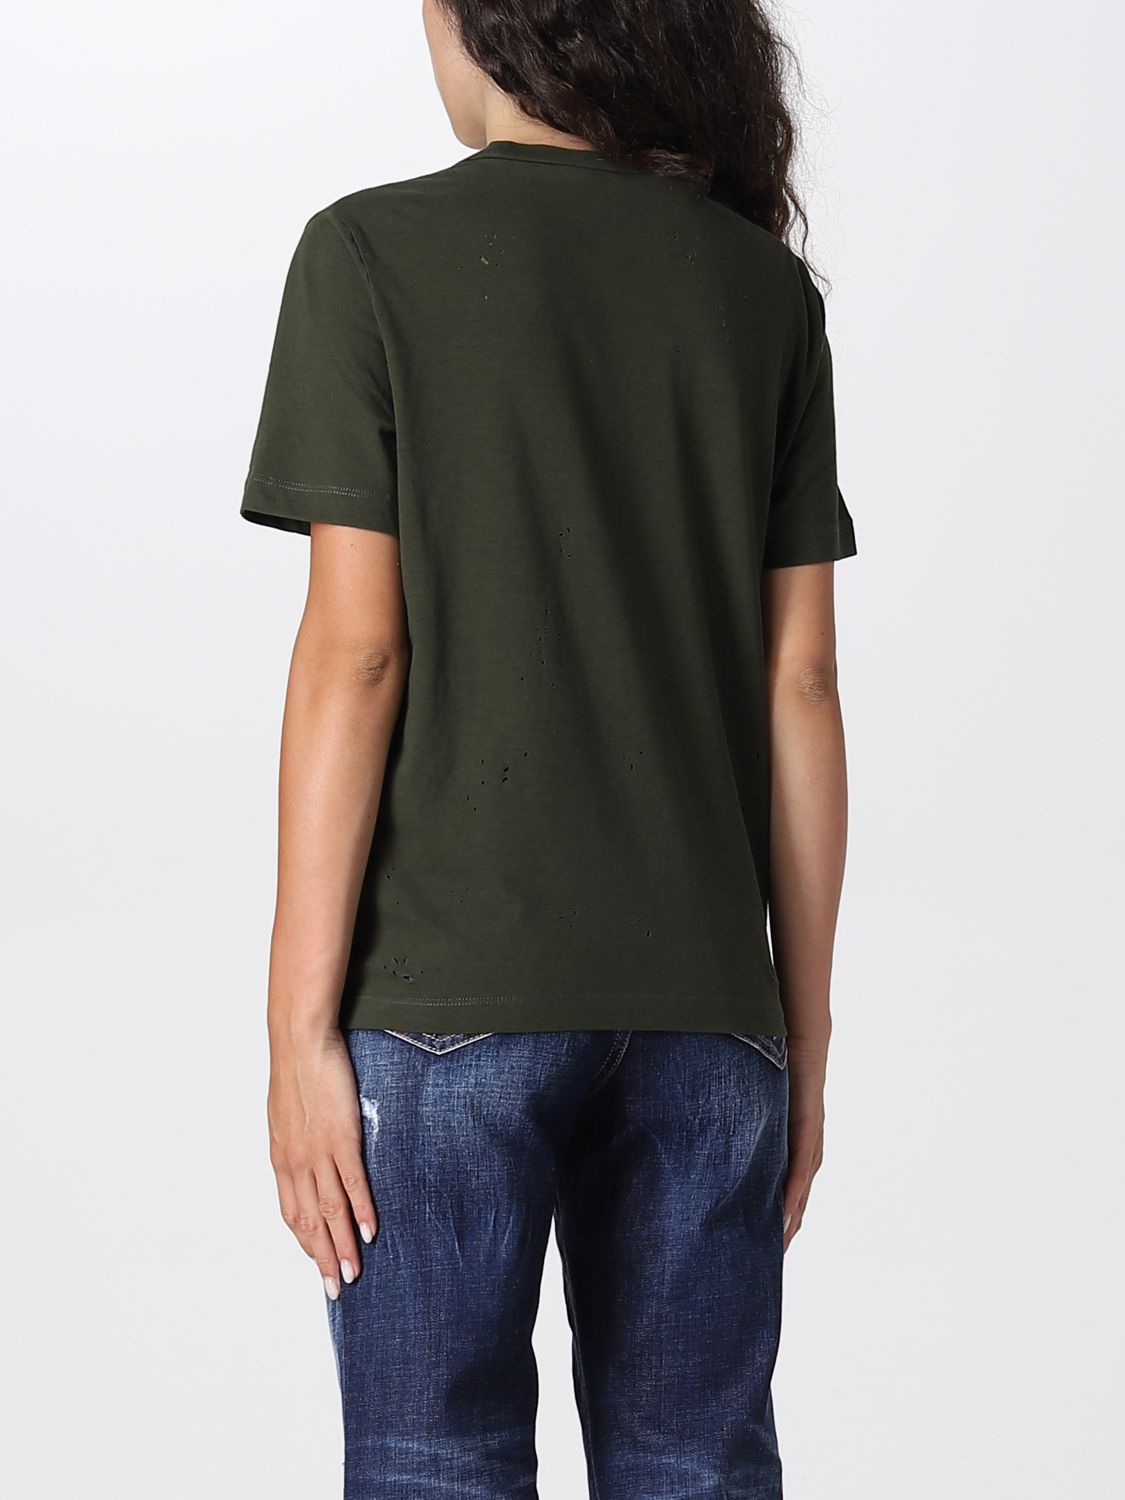 T-shirt Dsquared2: T-shirt Dsquared2 femme vert militaire 2